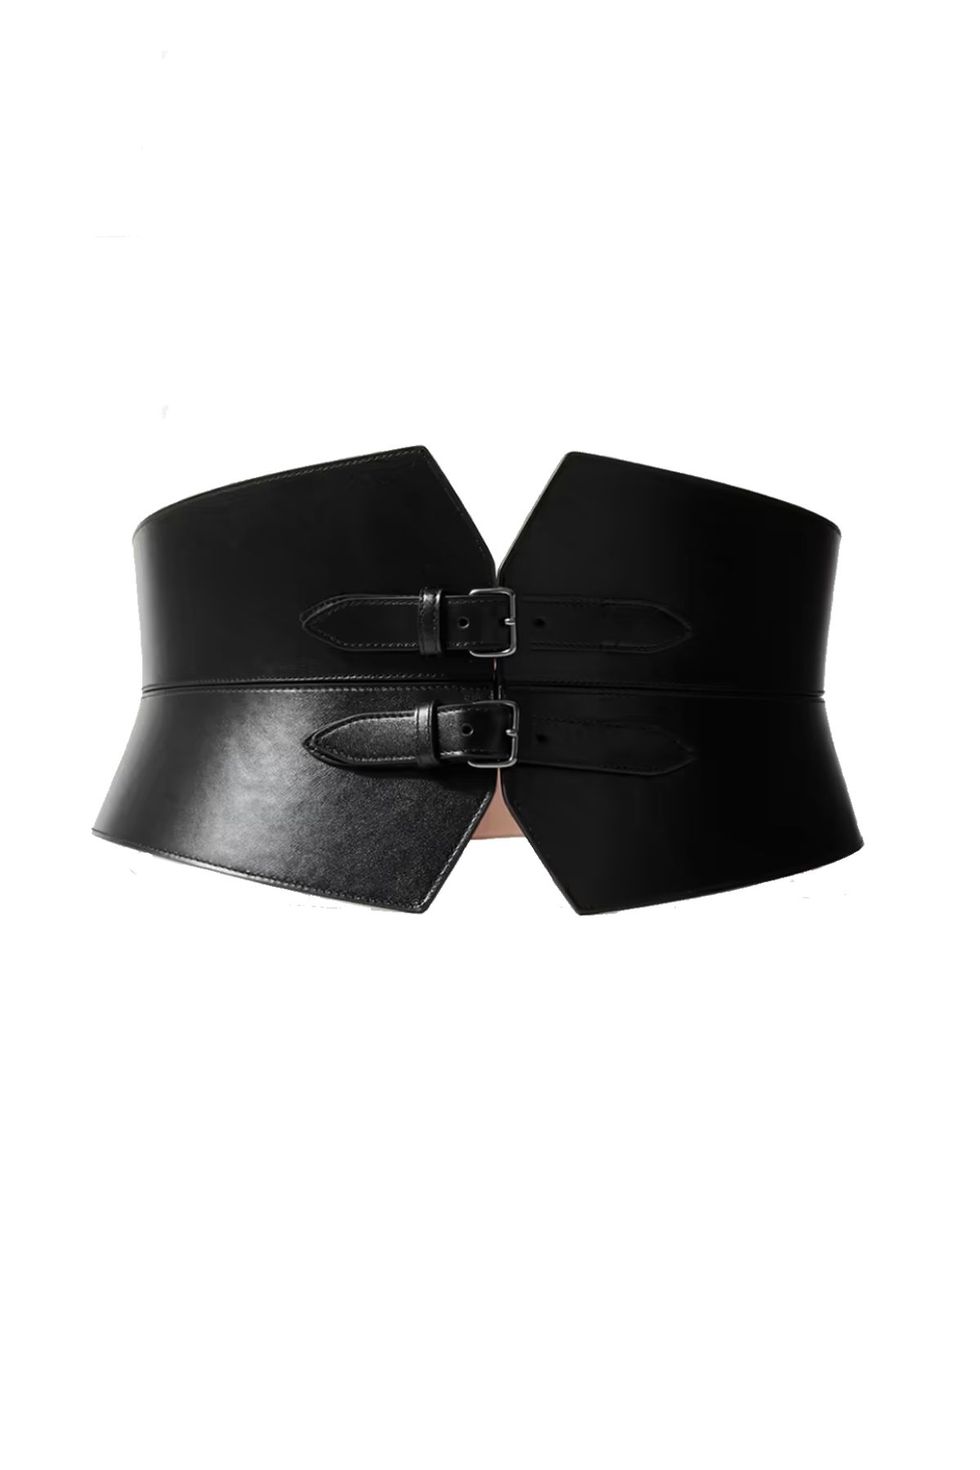 Designer Belts for Women - FARFETCH